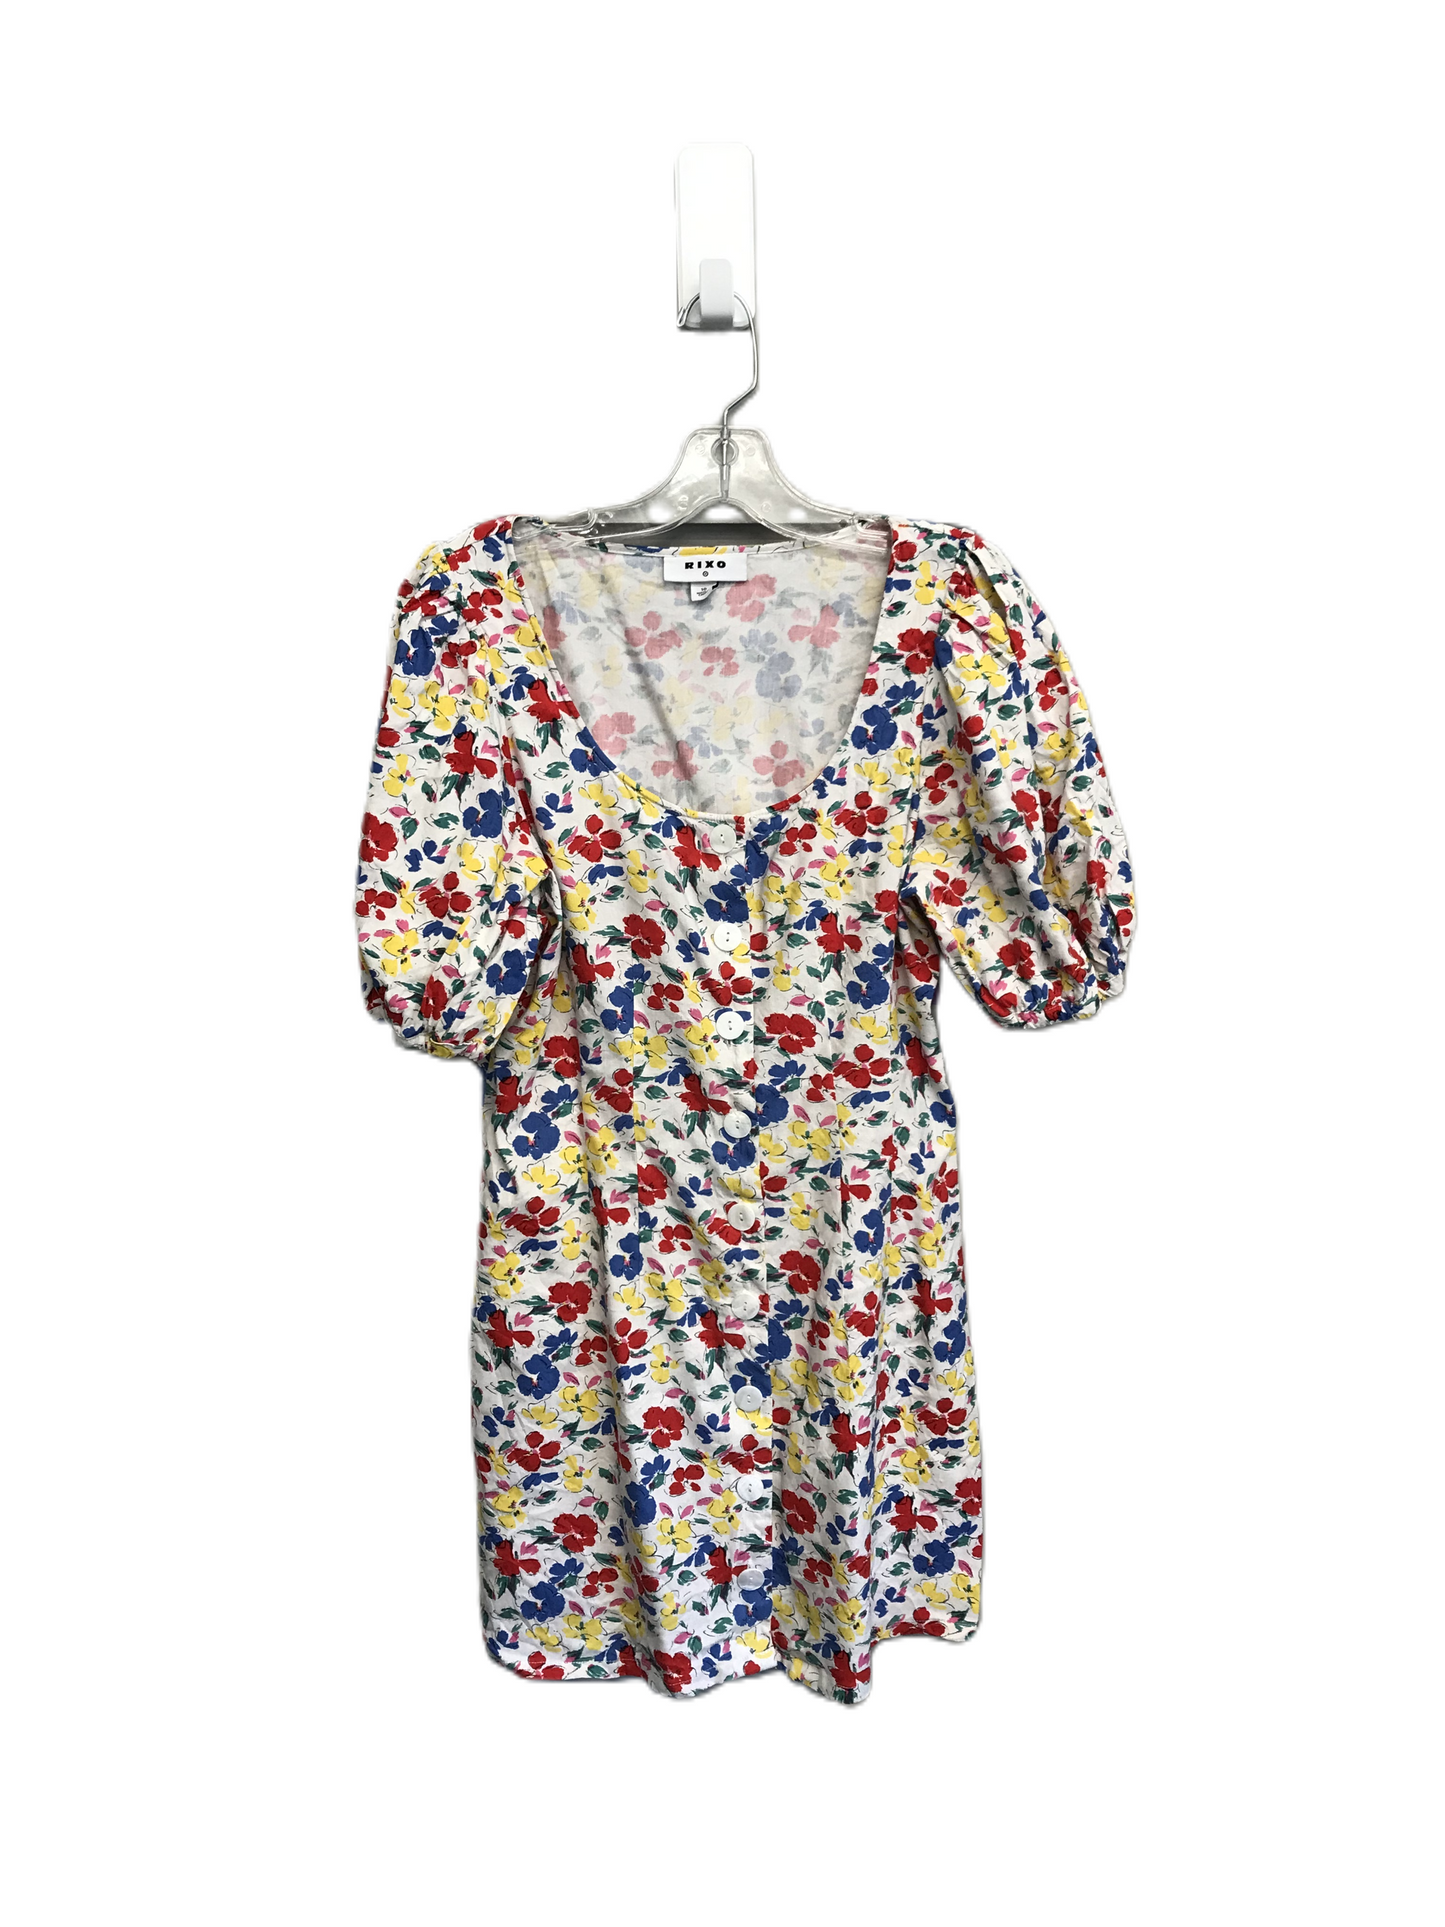 Floral Print Dress Work By Target-designer, Size: M